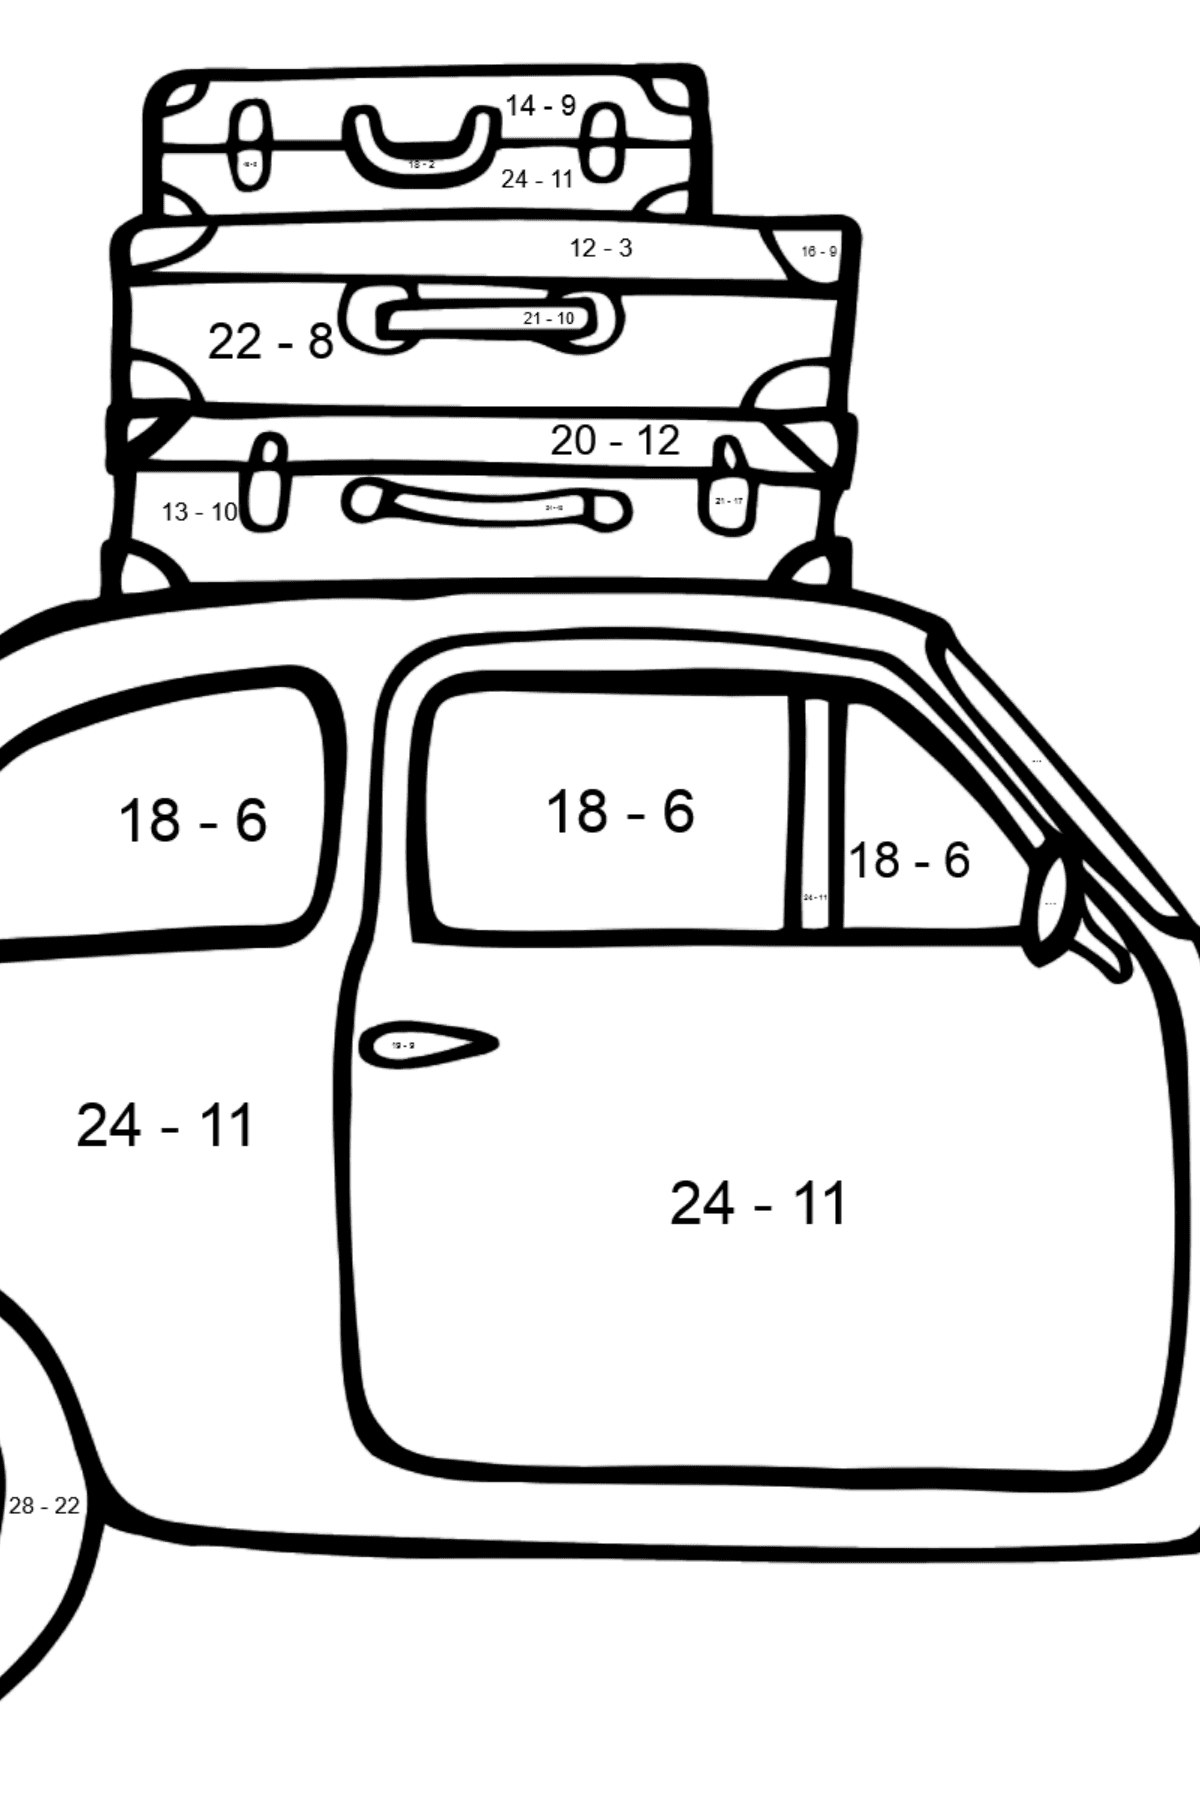 Desenho para colorir de Fiat 500 - Colorindo com Matemática - Subtração para Crianças